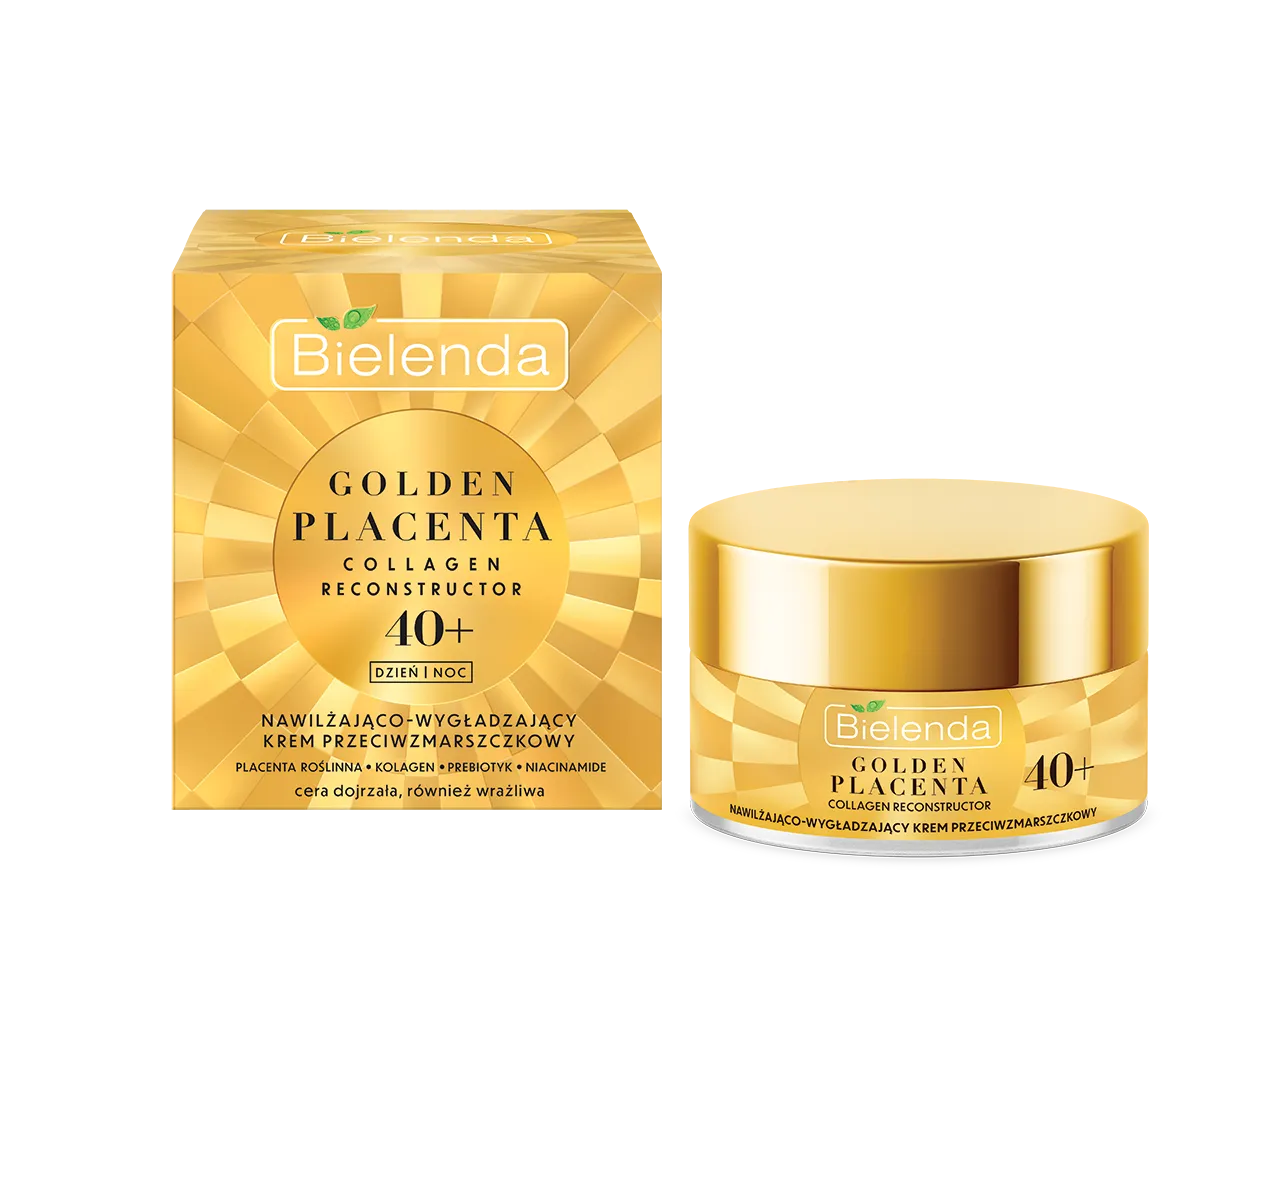 Bielenda Golden Placenta Collagen Reconstructor nawilżająco-wygładzający krem przeciwzmarszczkowy 40+, 50 ml